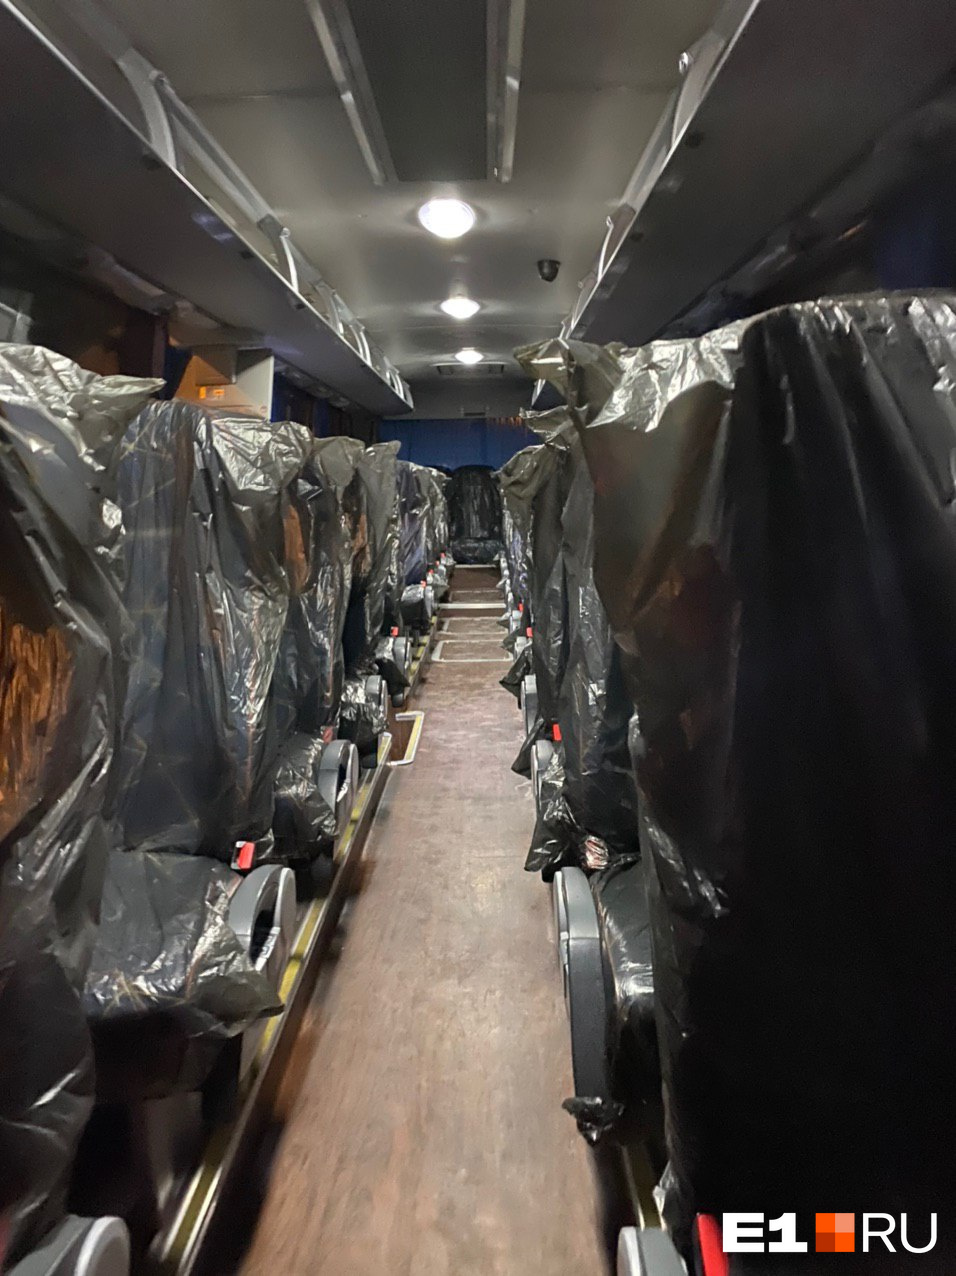 Сиденья автобуса, на котором туристов увезли с аэродрома в обсерватор, — в мешках